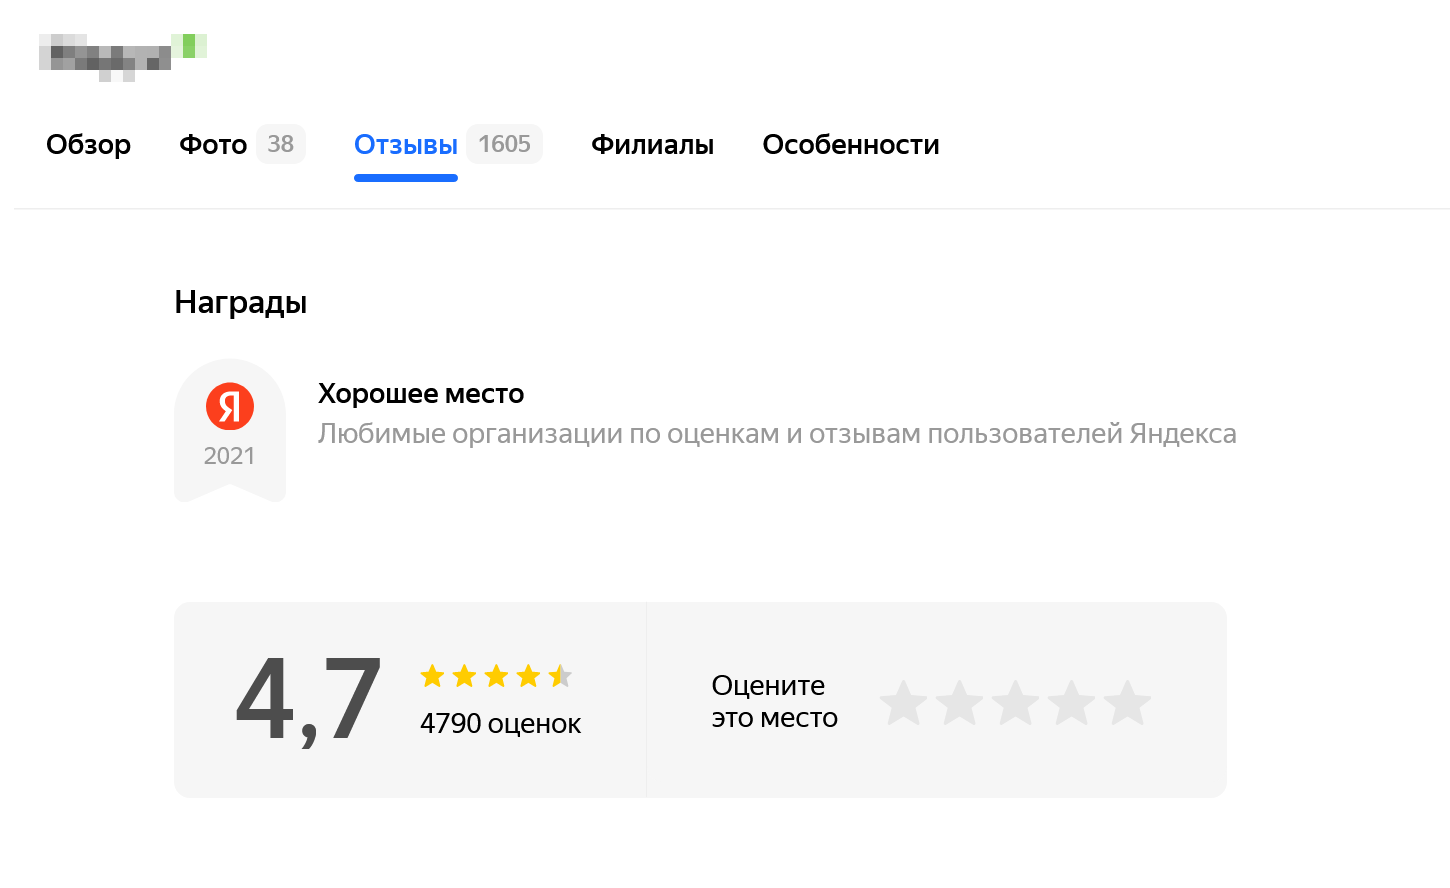 1579 отзывов на «Яндекс-карте». Оценки положительные, но при выборе лучше еще раз посмотреть отзывы о клинике на других сайтах, так как на картах больше шансов встретить заказные. Источник: «Яндекс-карты»